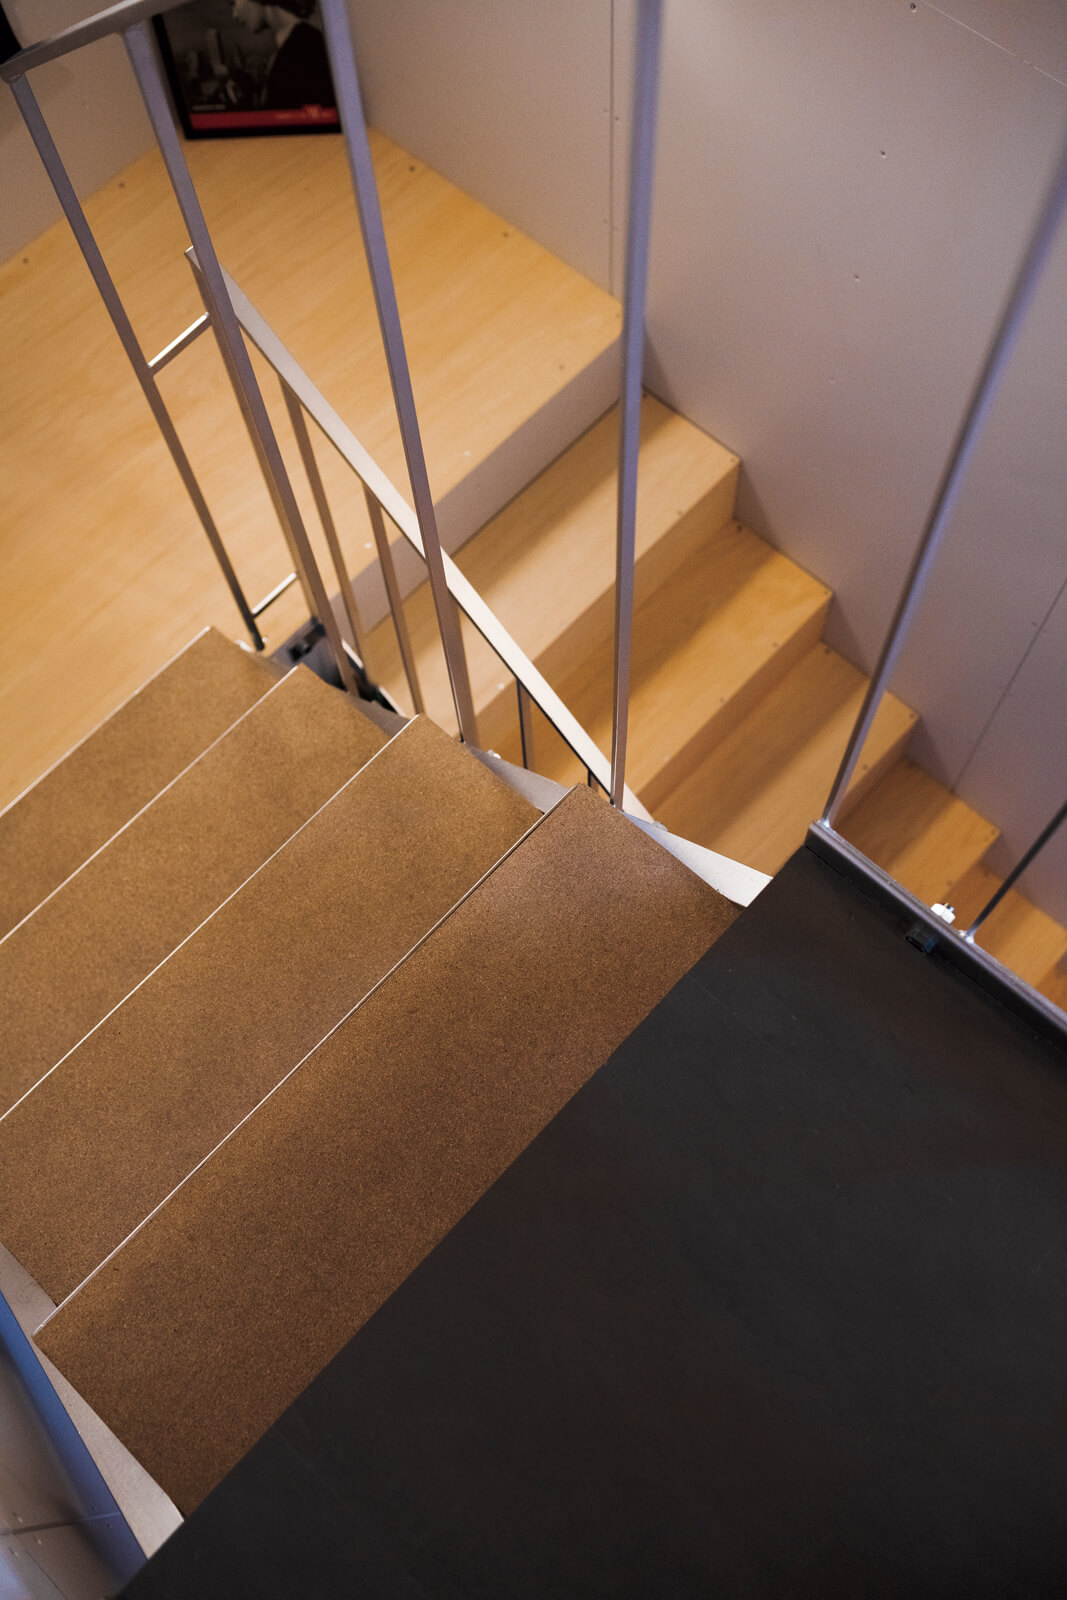 工業的な雰囲気を好むNさんの意向を生かし、階段の素材はシルバーに塗装したスチールを採用。表面が滑らかなパーティクルボードを踏み板としている